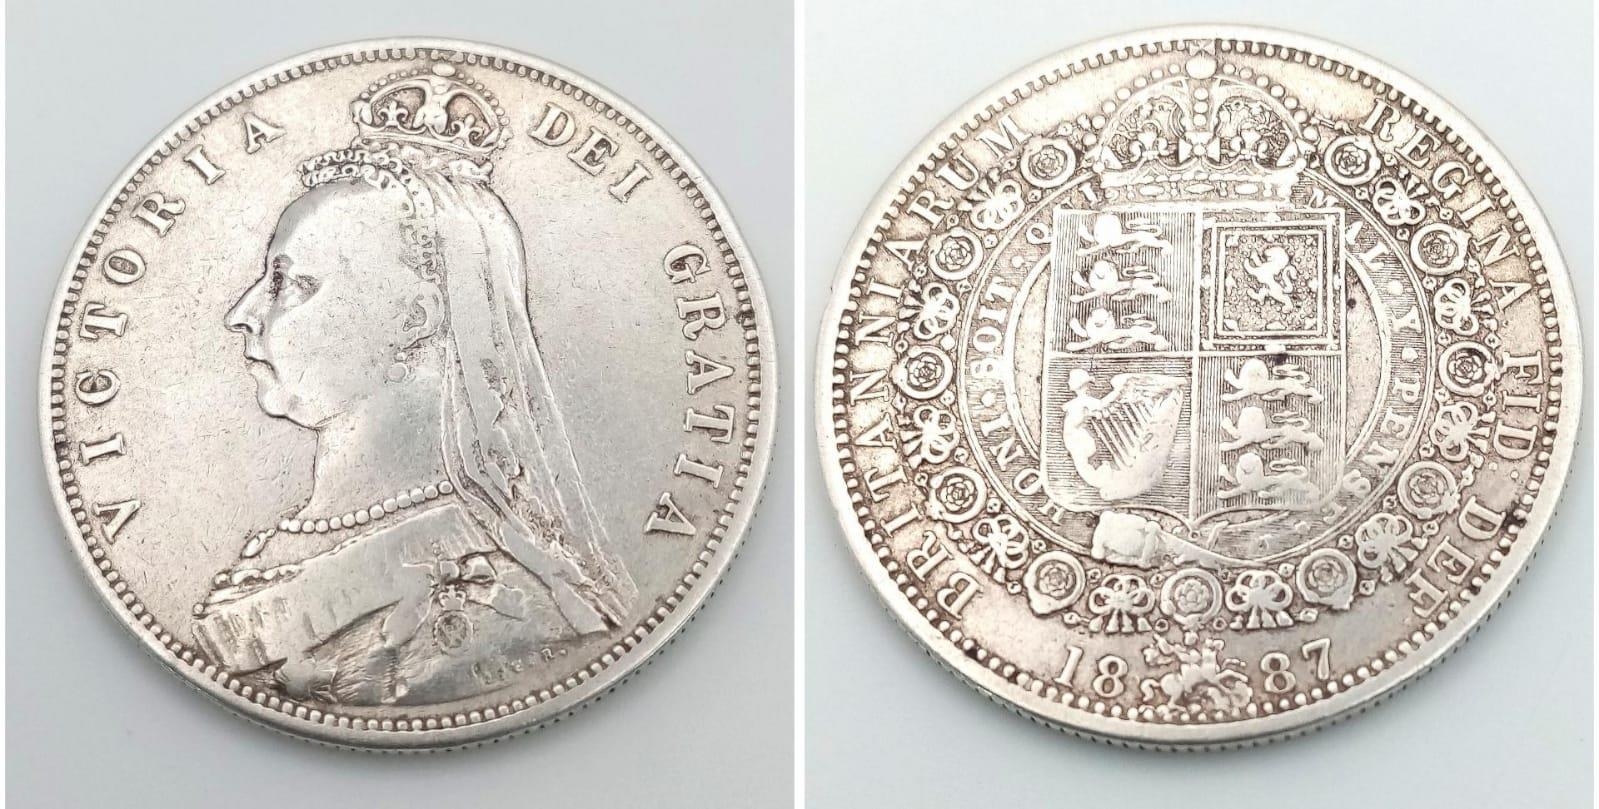 An 1887 Queen Victoria Silver Half Crown Coin. VF grade but please see photos.